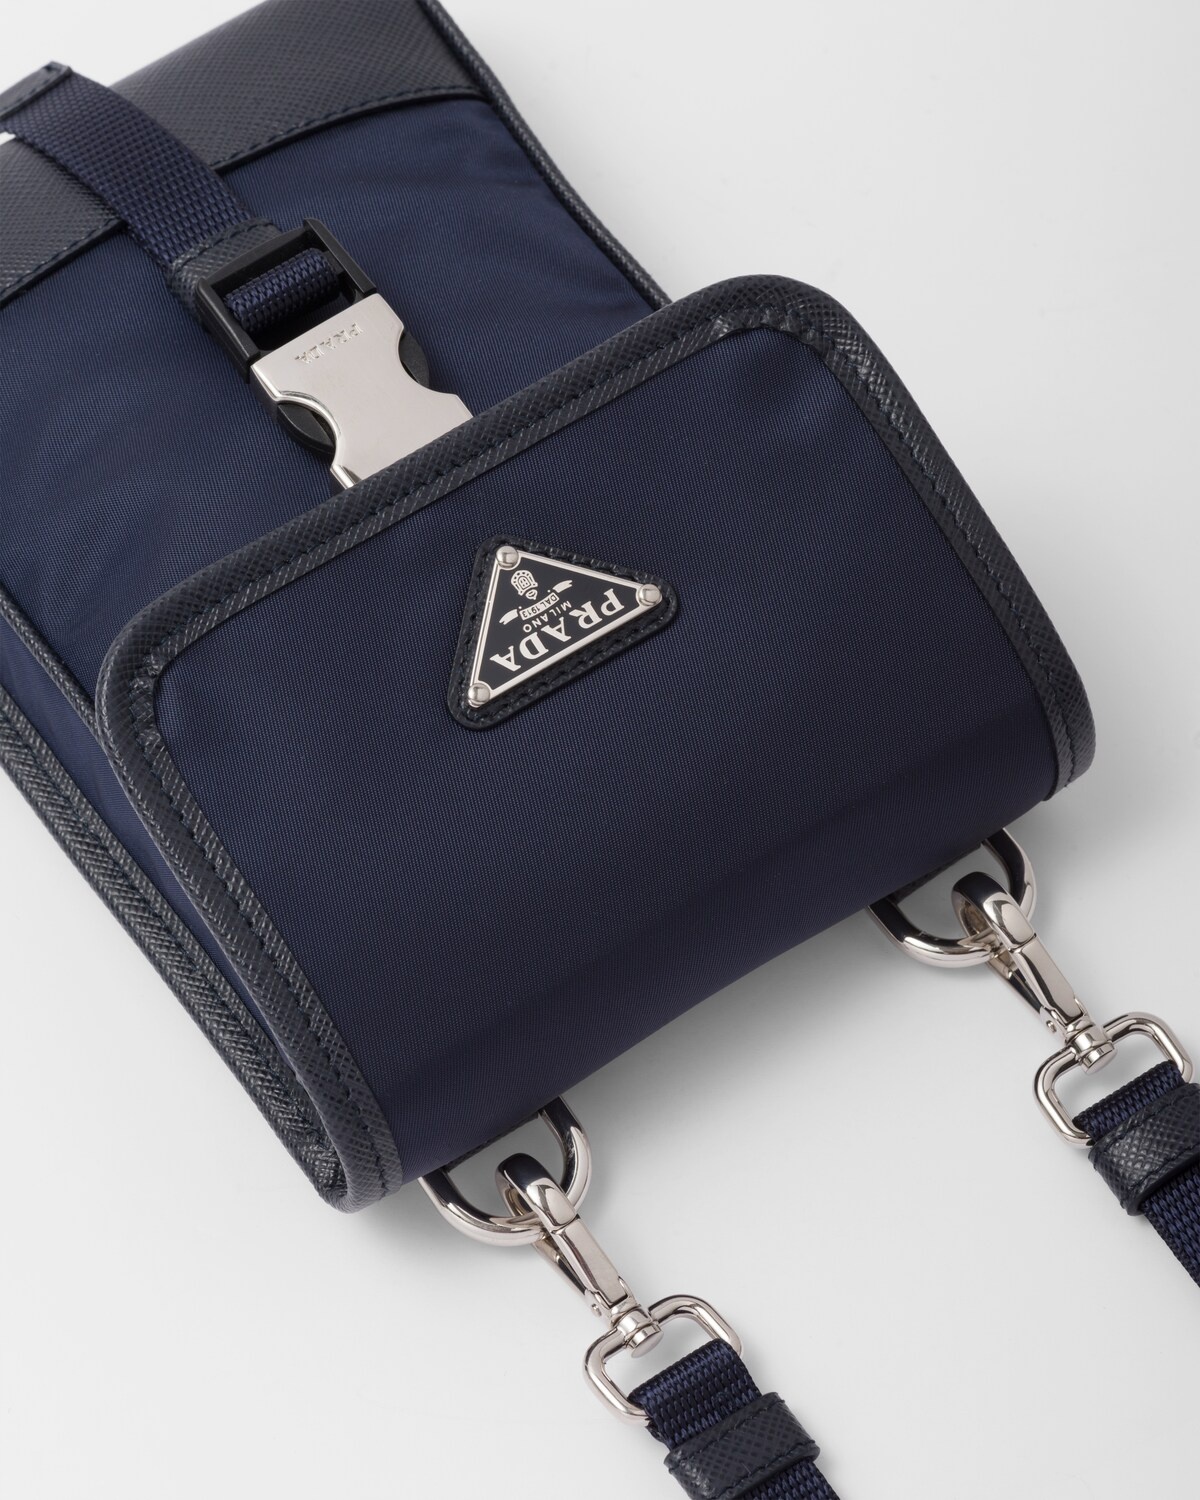 Re-Nylon and Saffiano leather smartphone case - 6